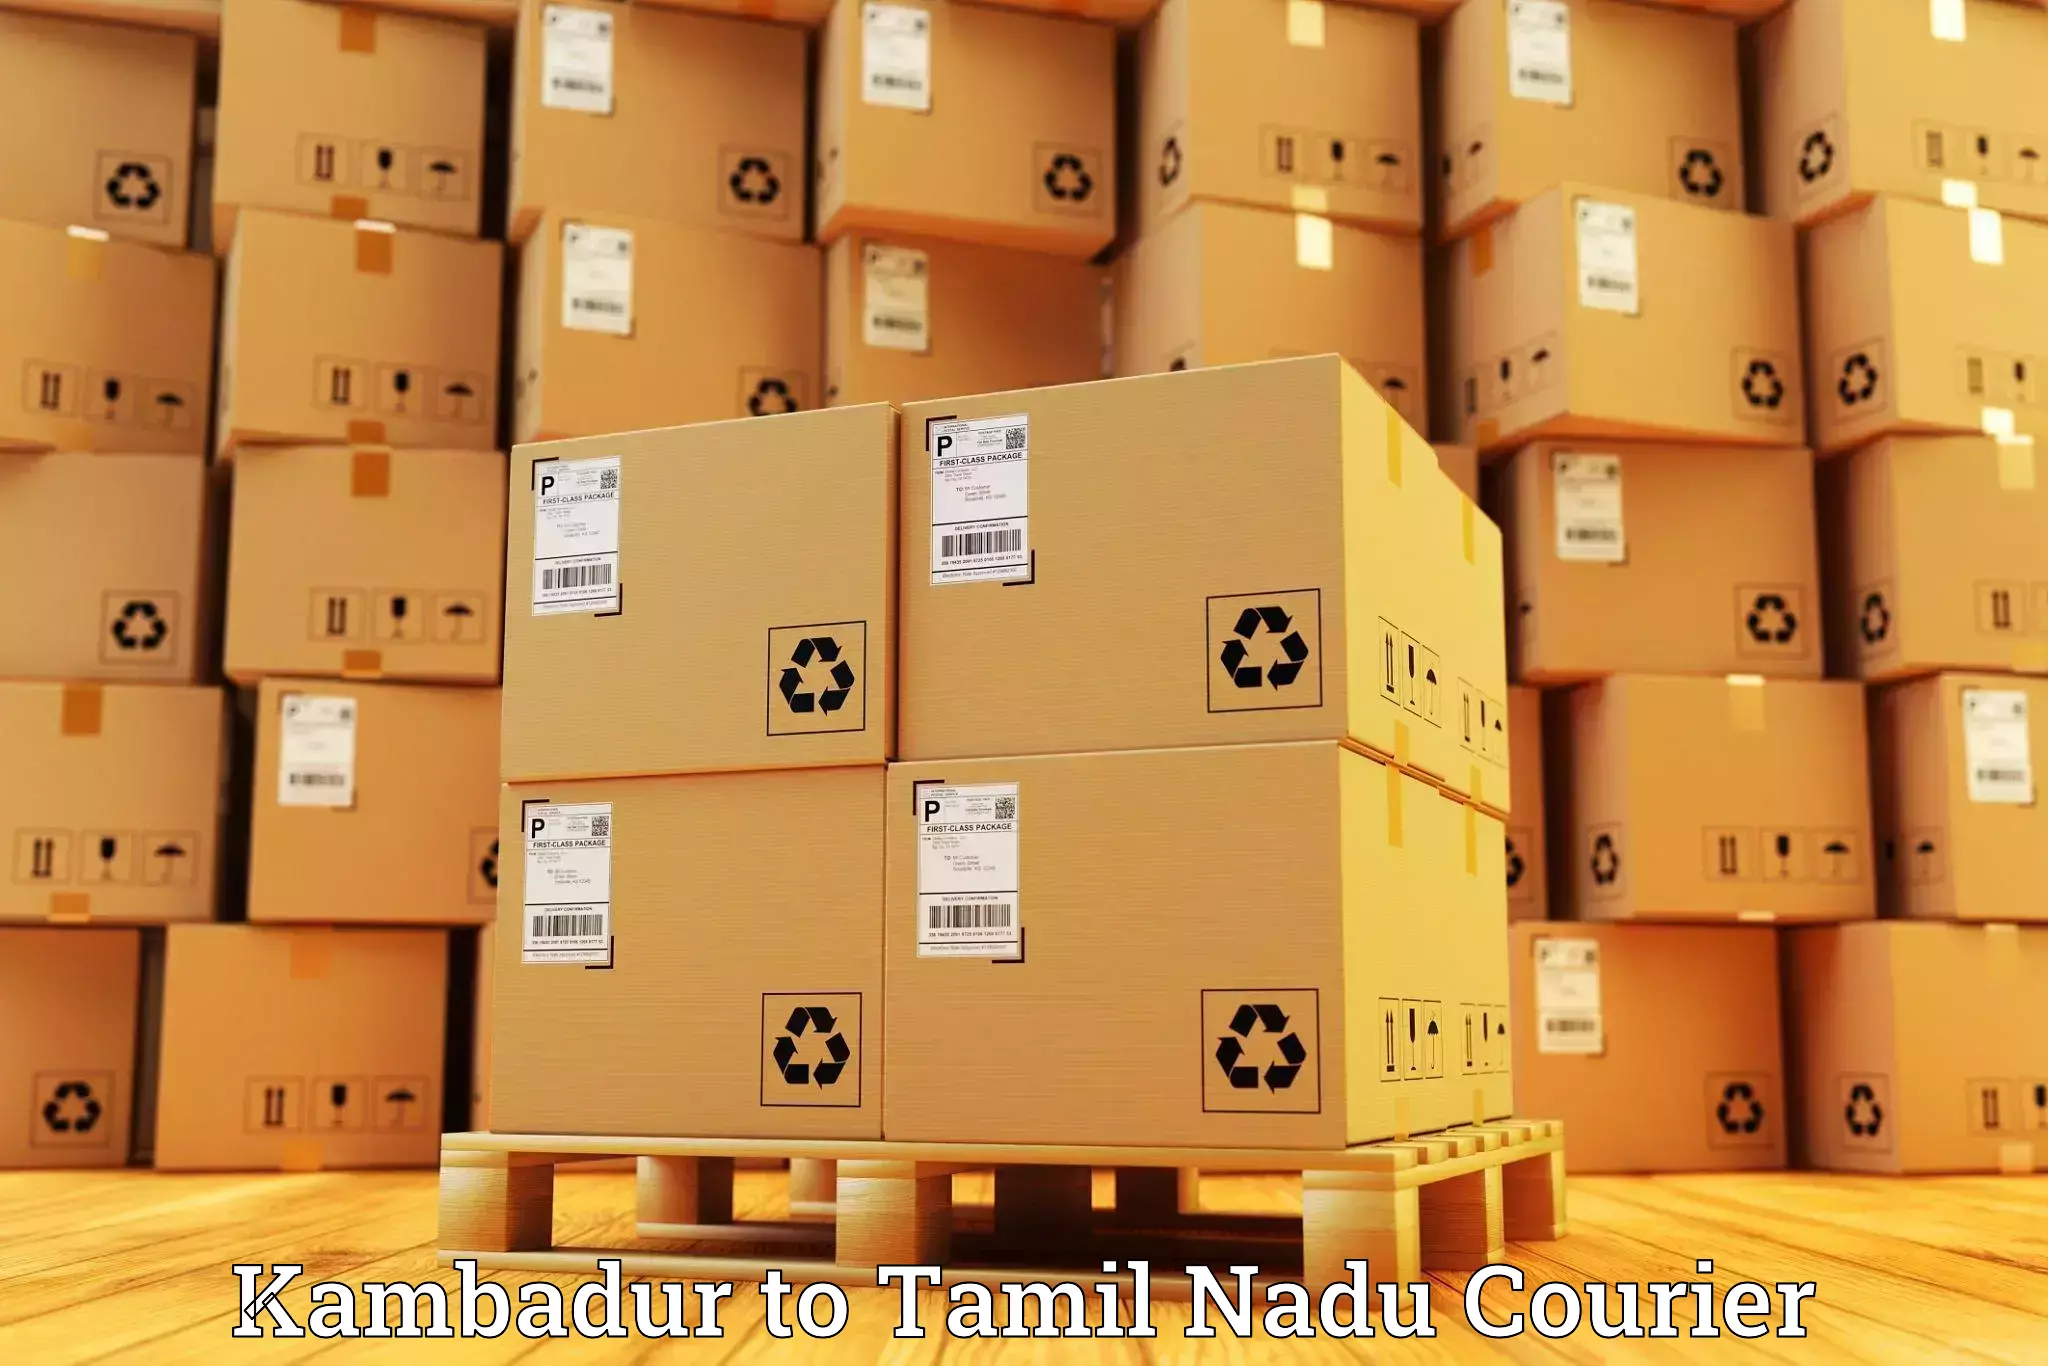 Express mail service Kambadur to Tirupur